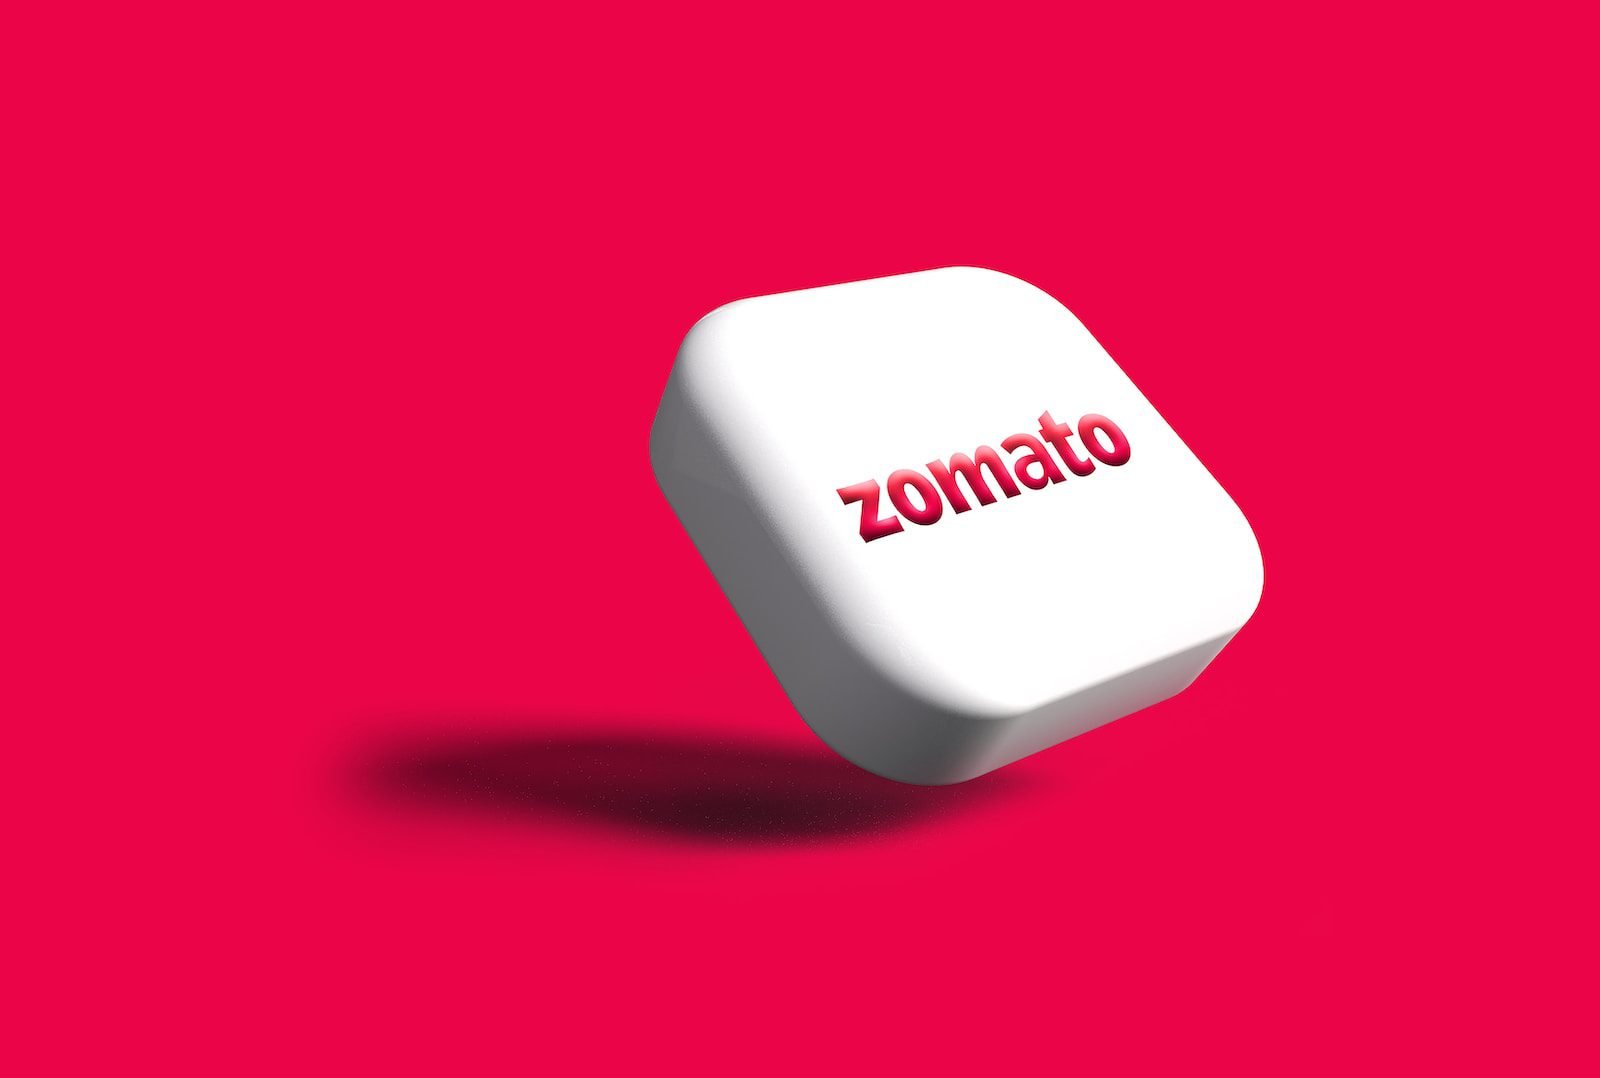 Zomato shares rally 4%